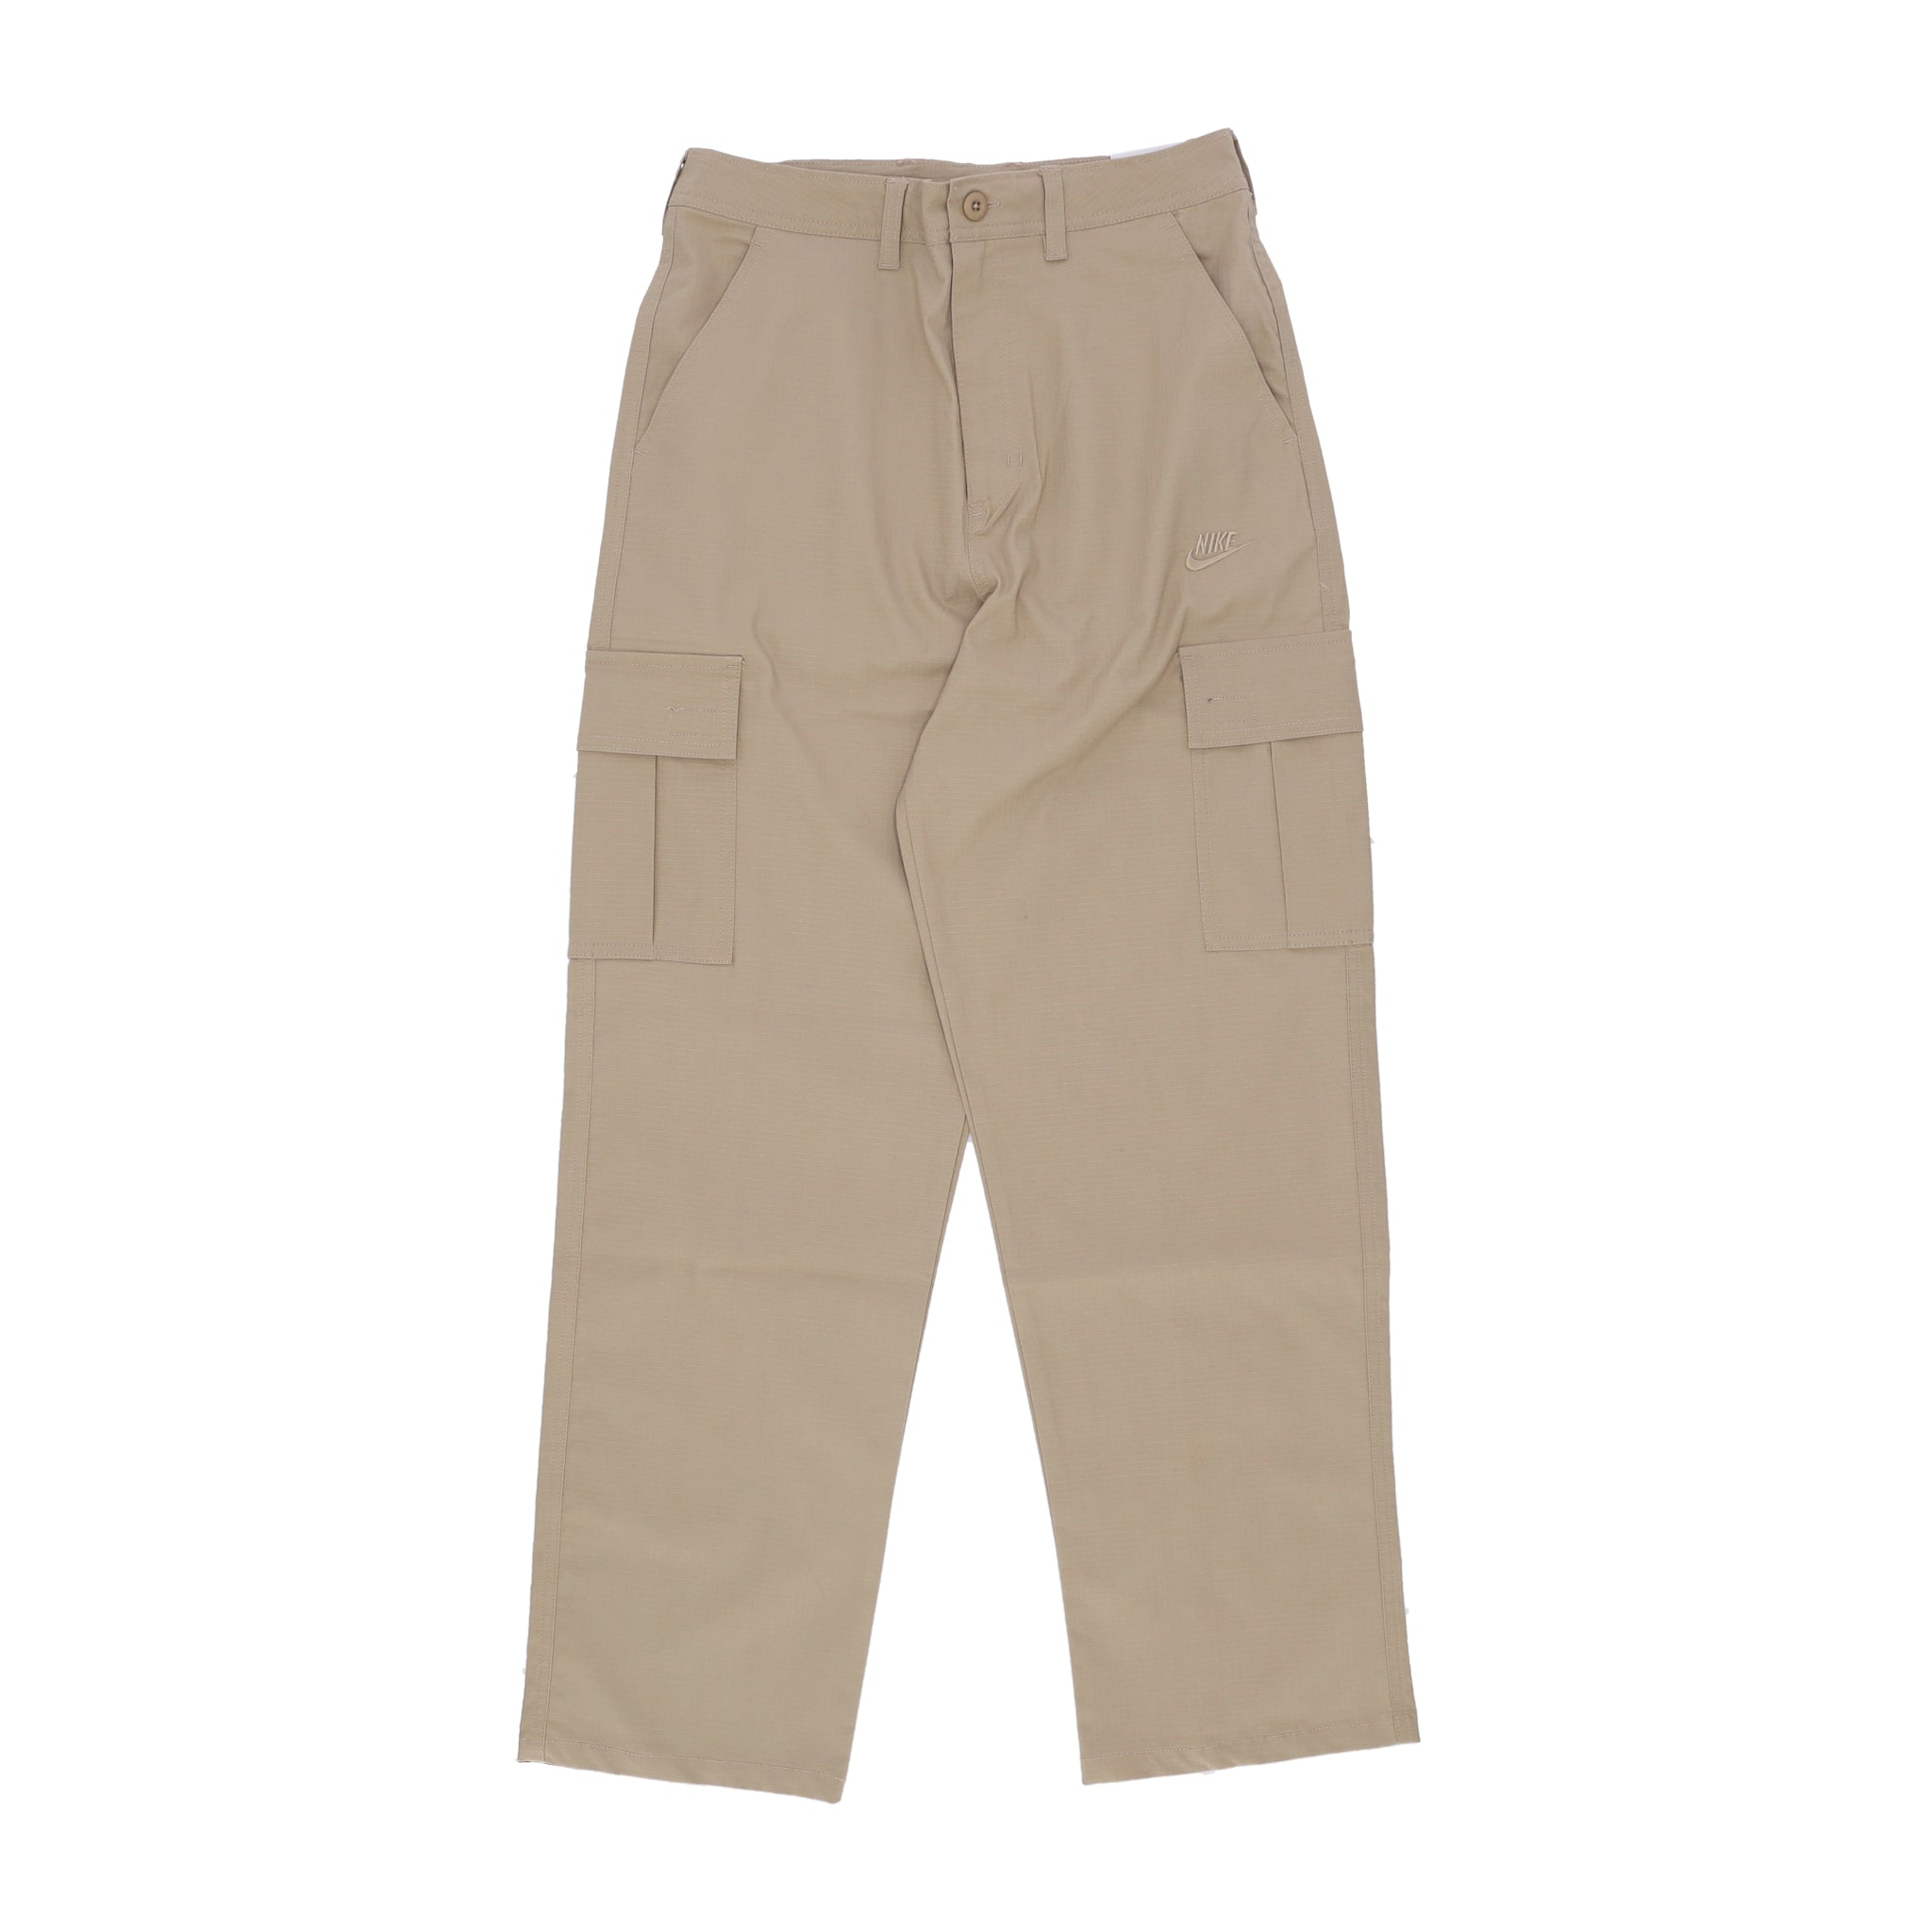 Pantalone Lungo Uomo Club Cargo Pant Khaki/khaki FZ5765-247